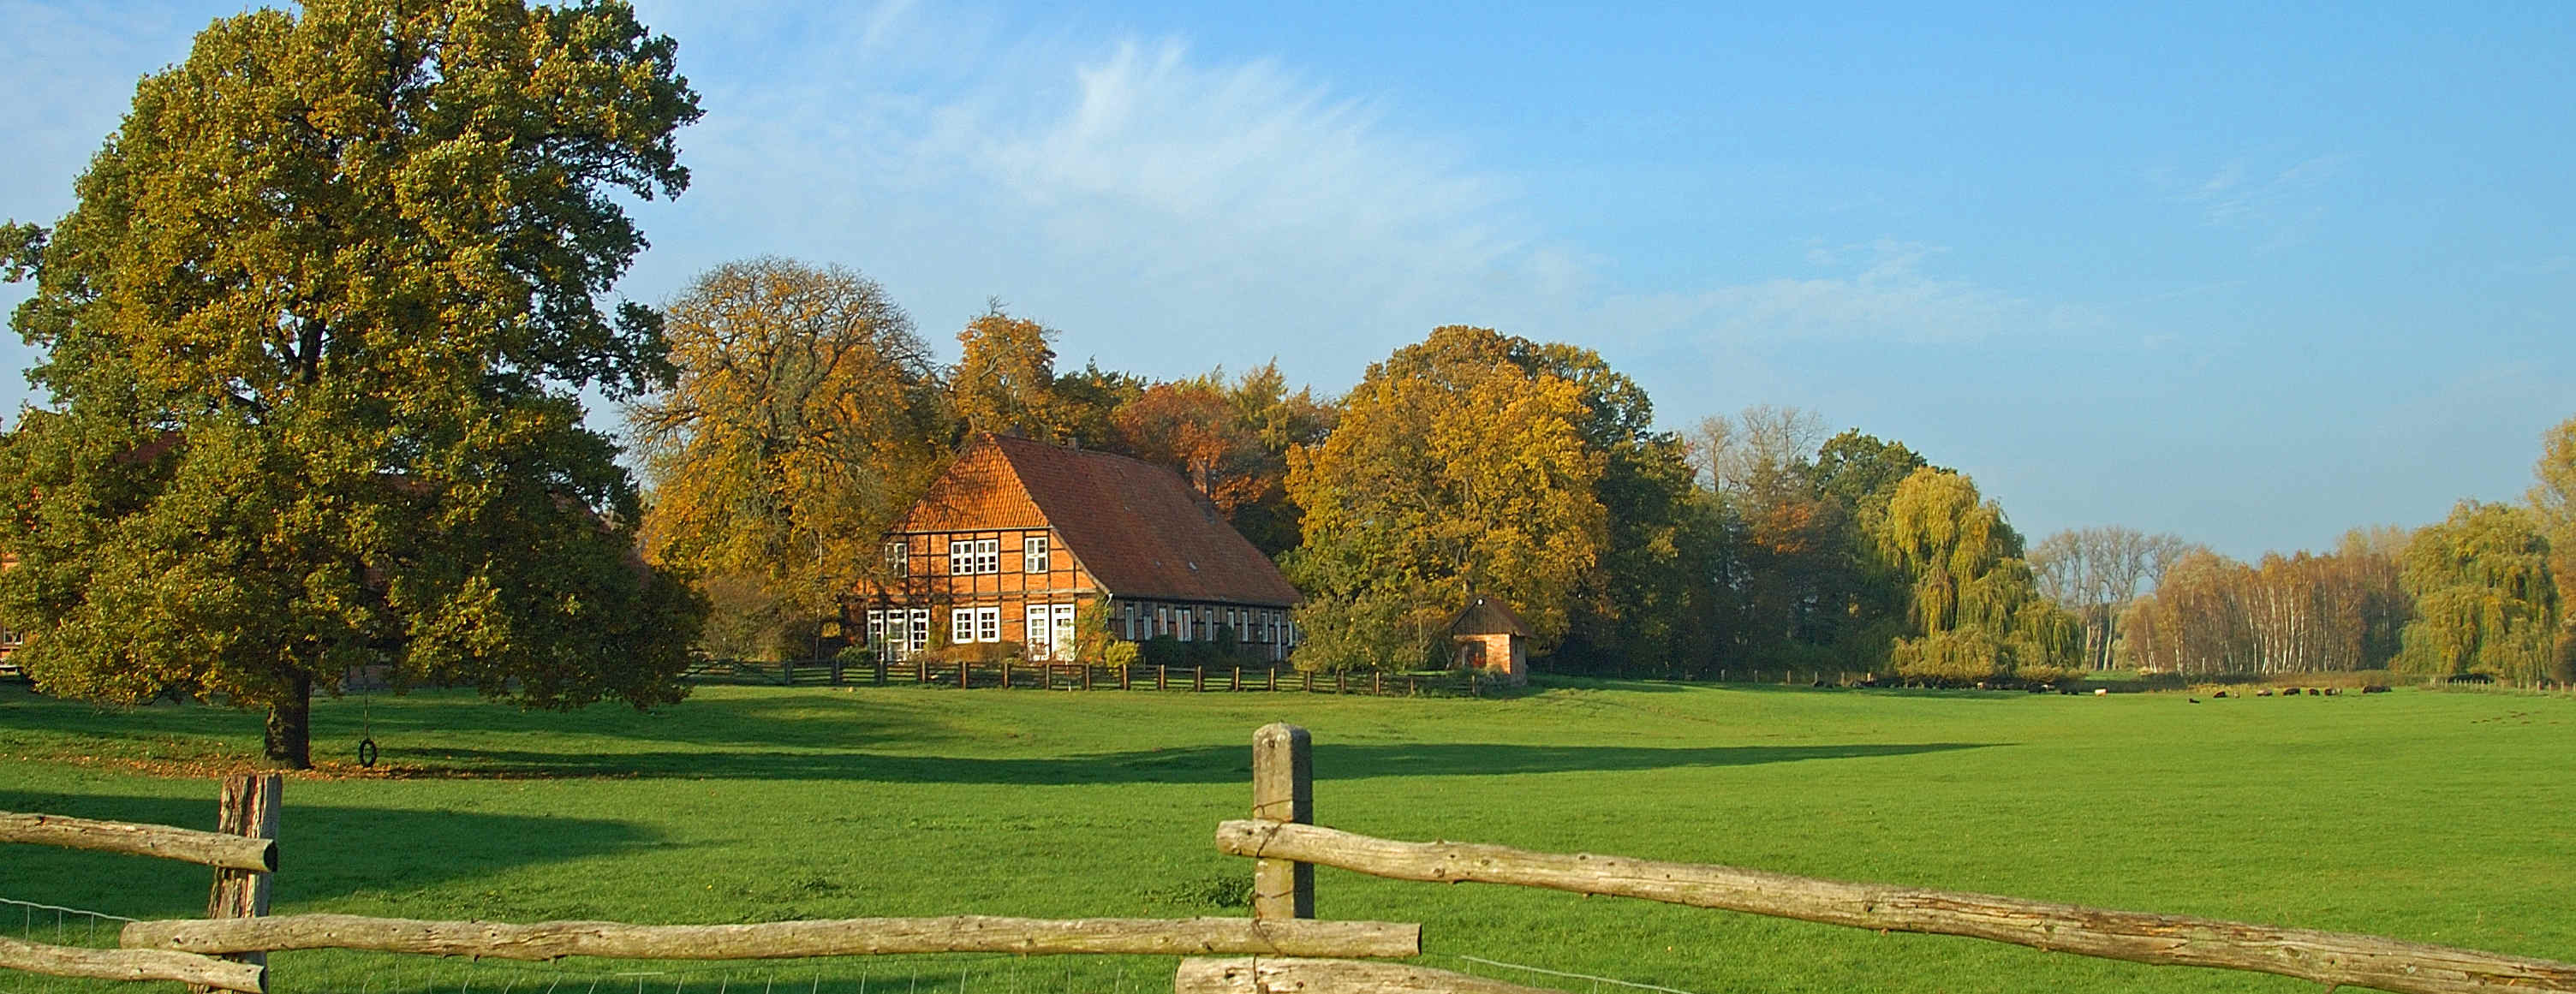 Panoramaansicht einer Weide mit einem ländlichen Haus dahinter